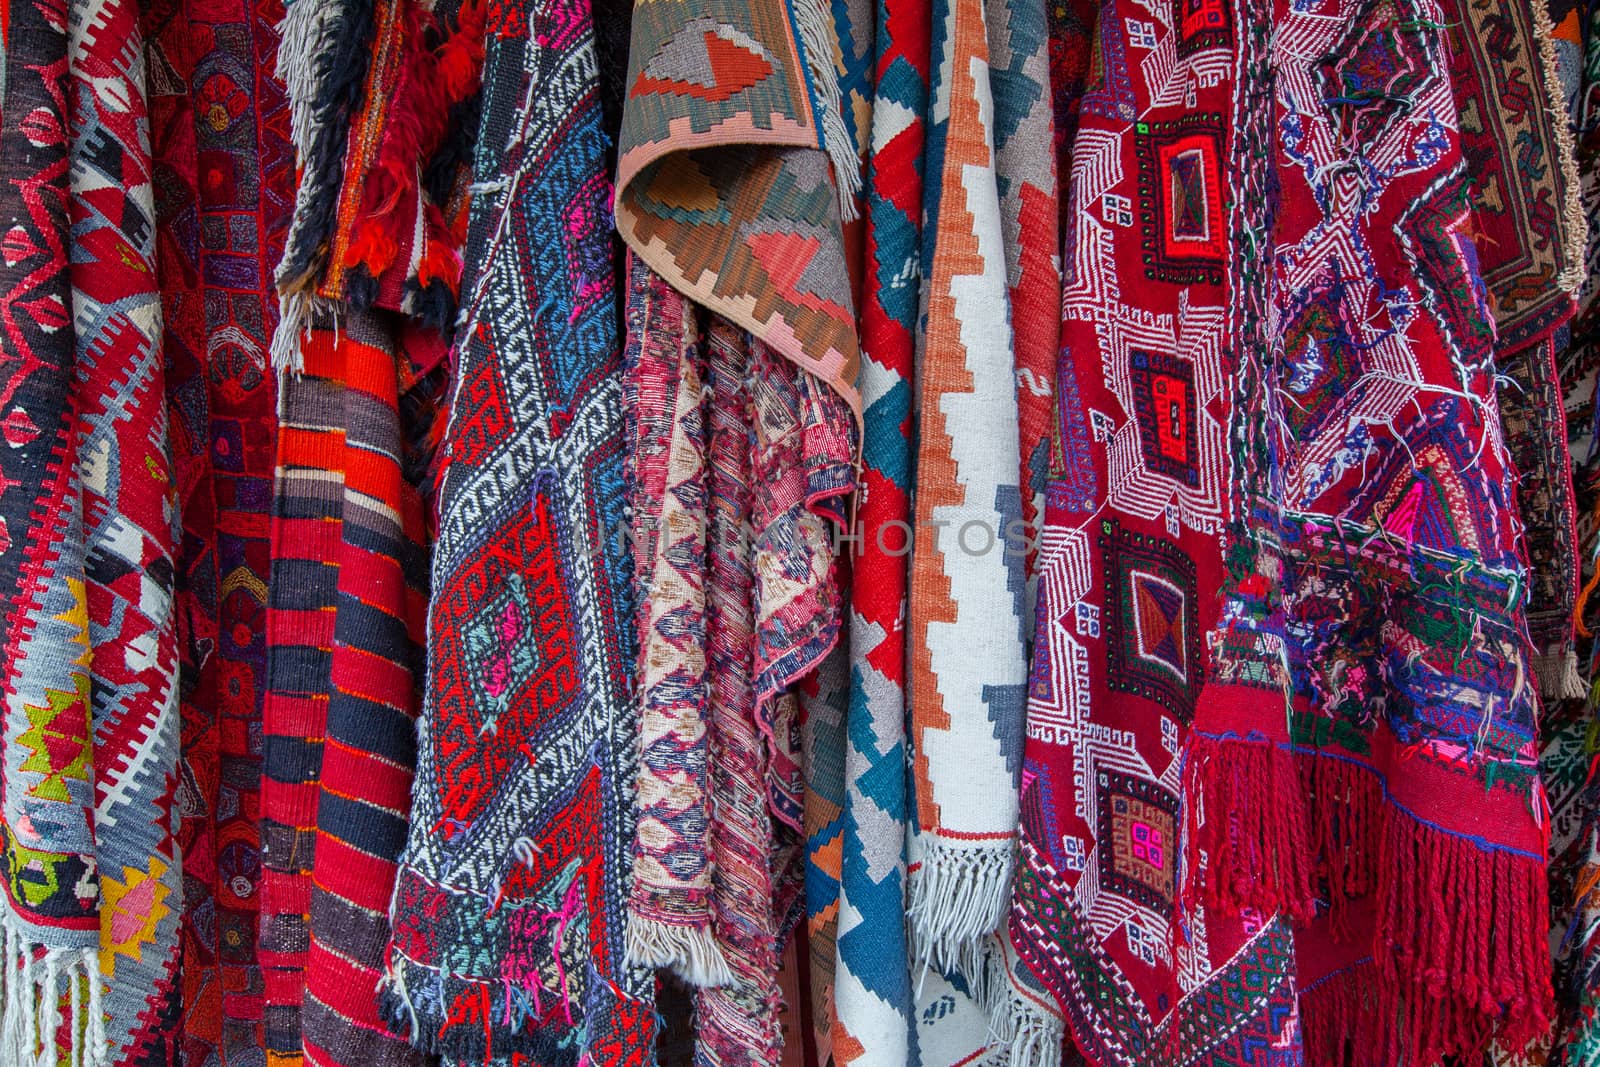 Oriental carpets in street market by igor_stramyk